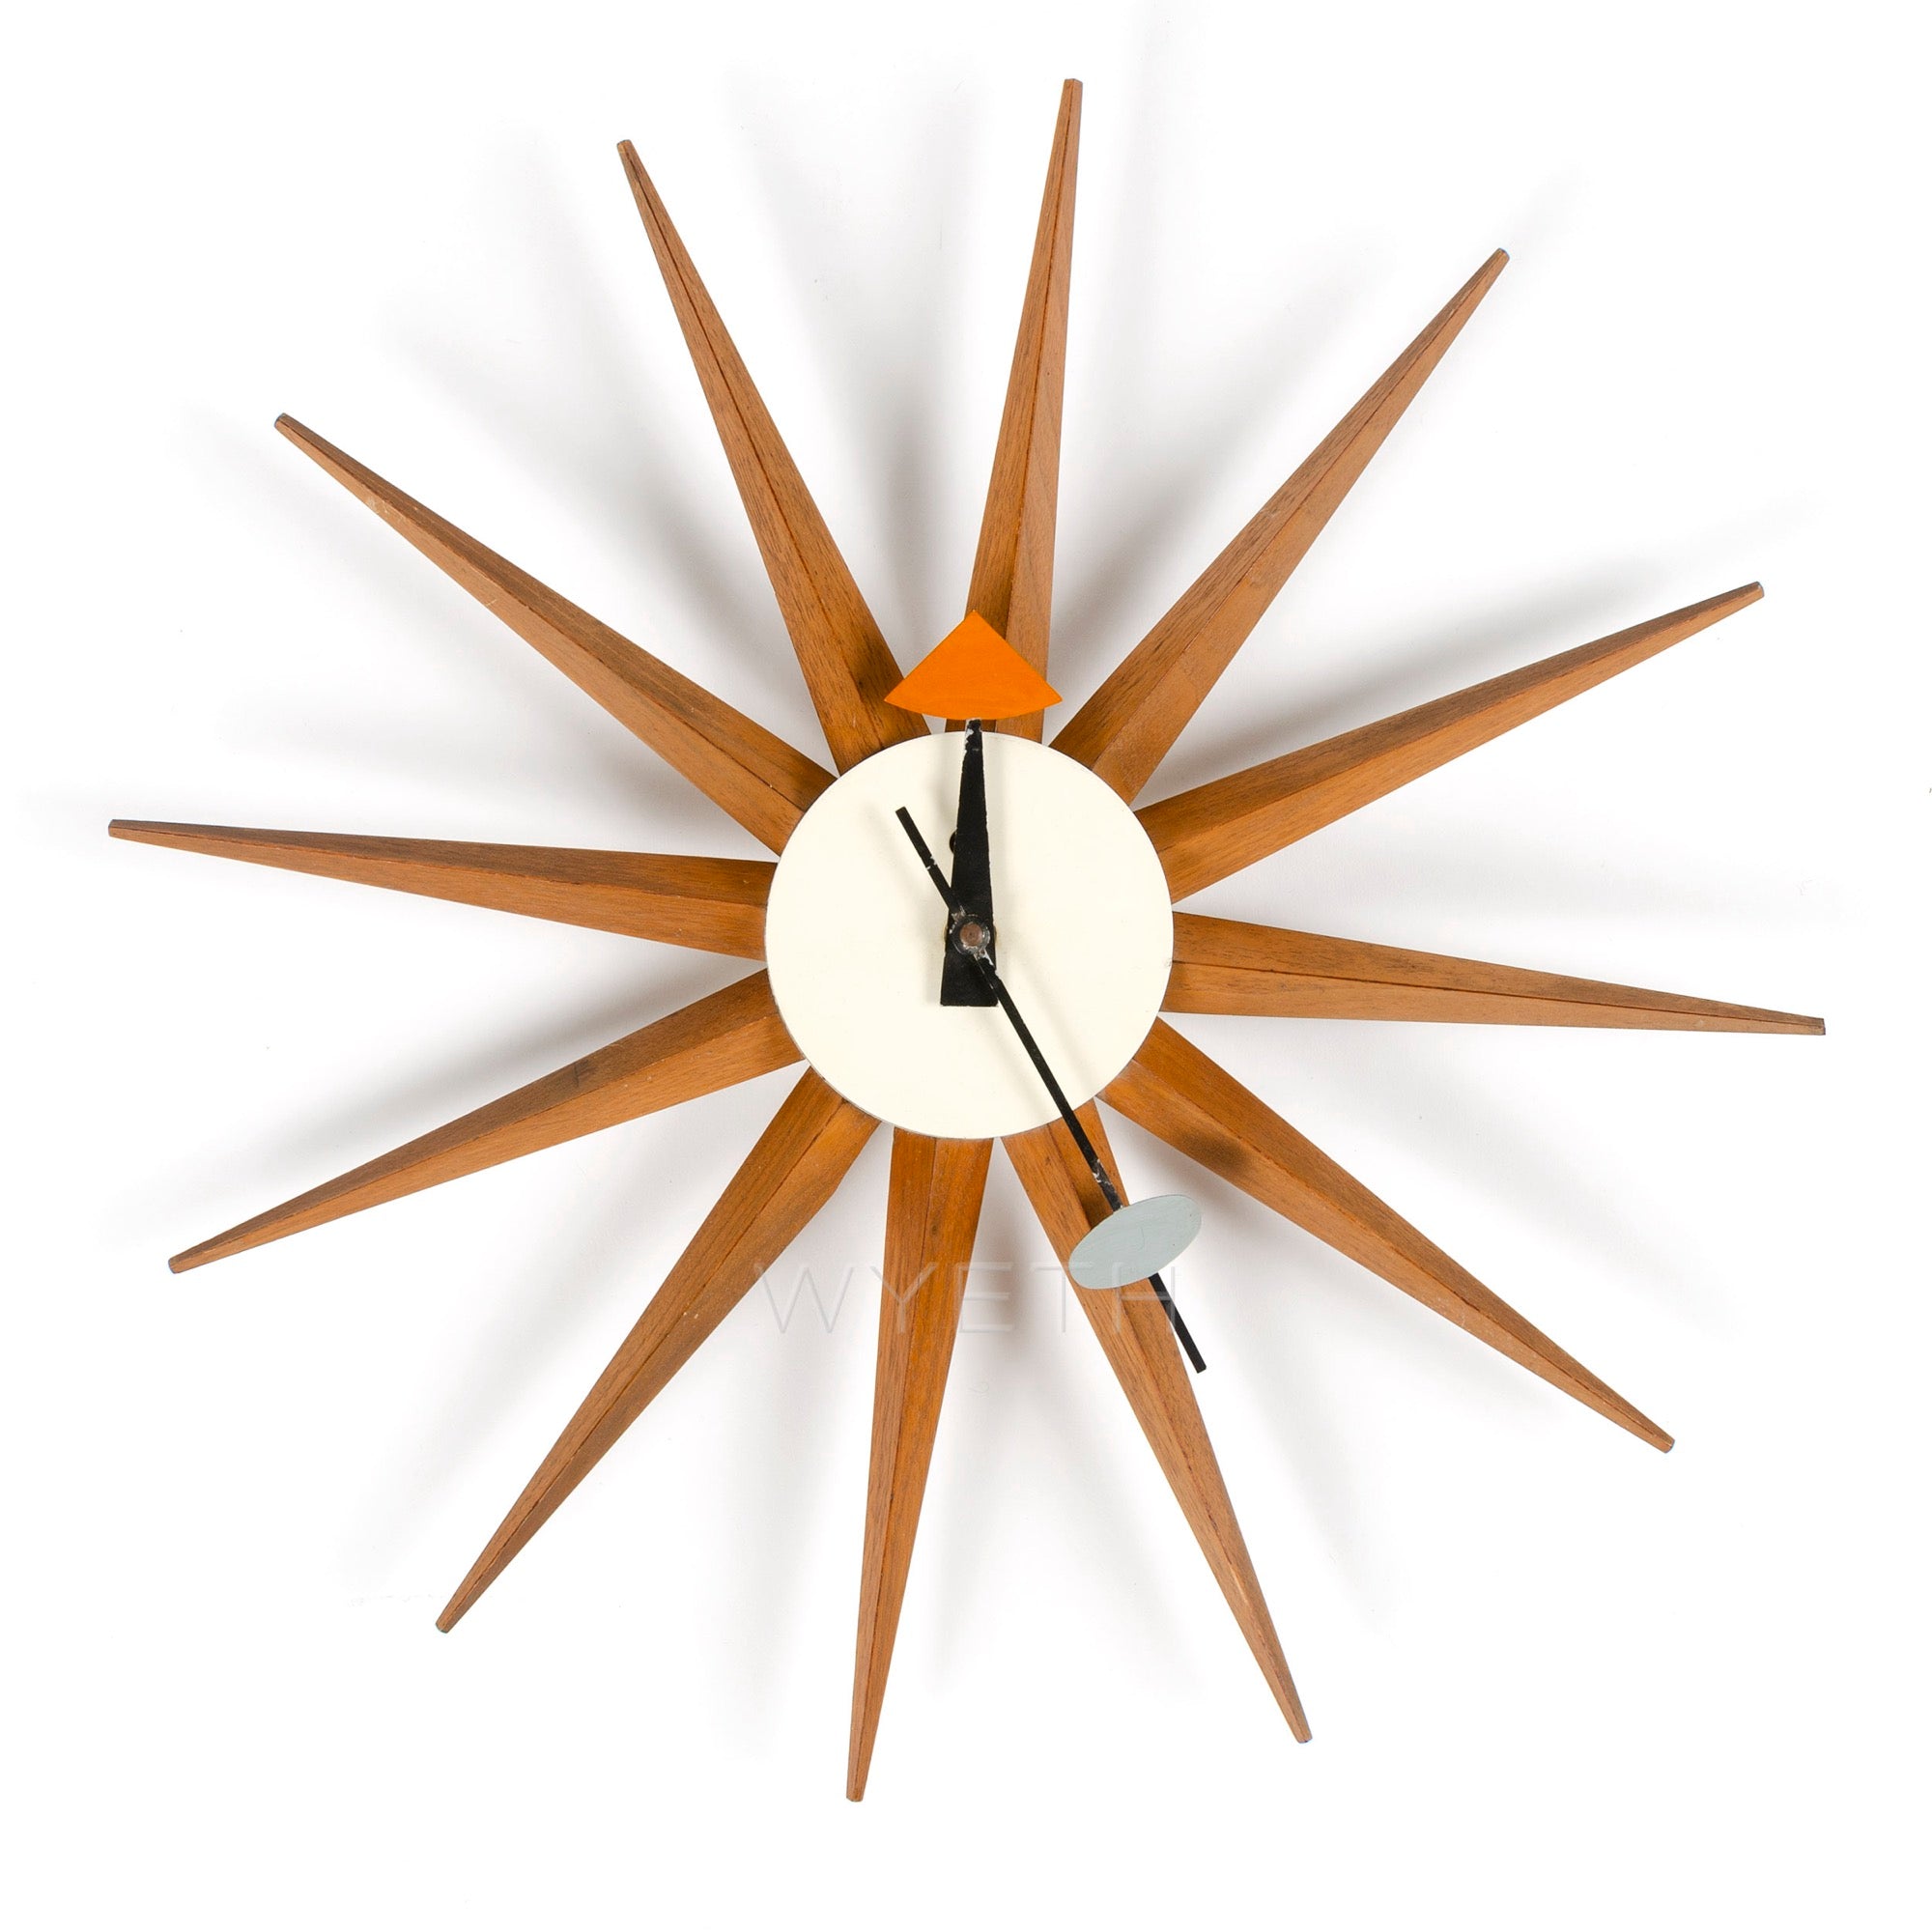 Sunburst Clock by George Nelson for Herman Miller